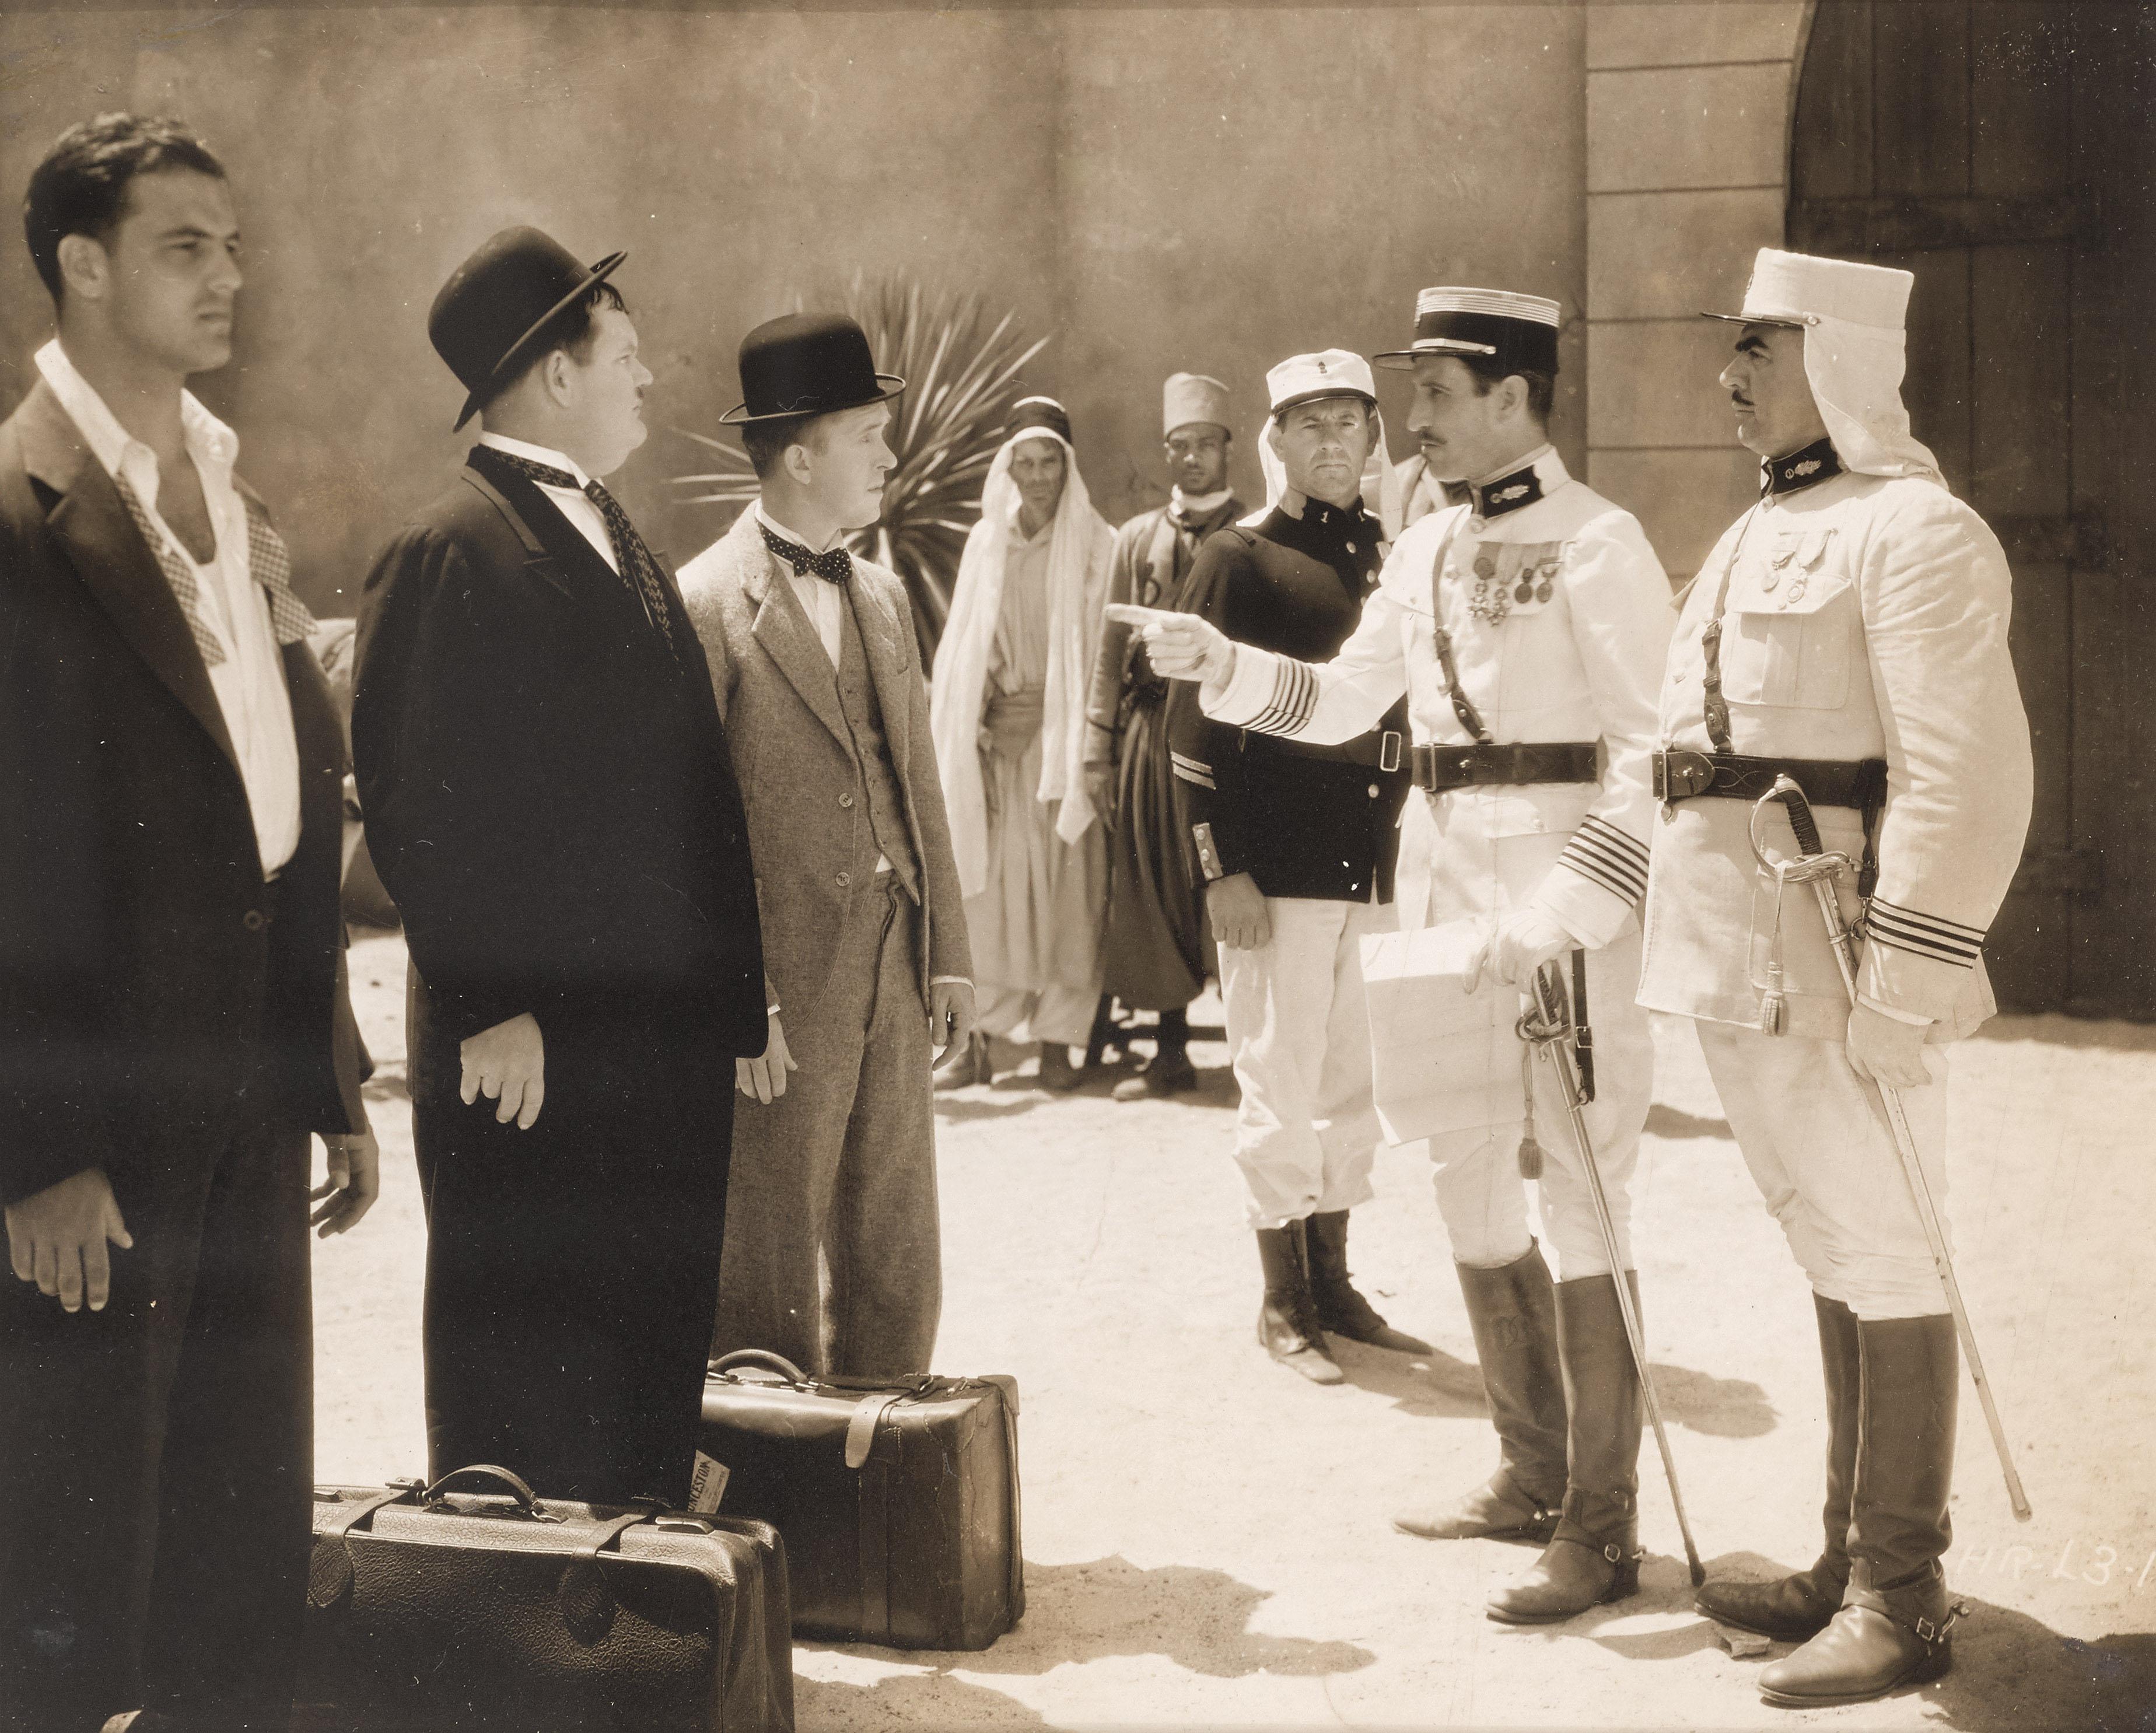 Photographie de studio américaine originale pour la courte comédie Beau Hunks de 1931 avec Stan Laurel et Oliver Hardy. Ce film a été réalisé par James W. Horne.
Cette pièce est encadrée dans un cadre en bois de Sapele avec des supports de carte